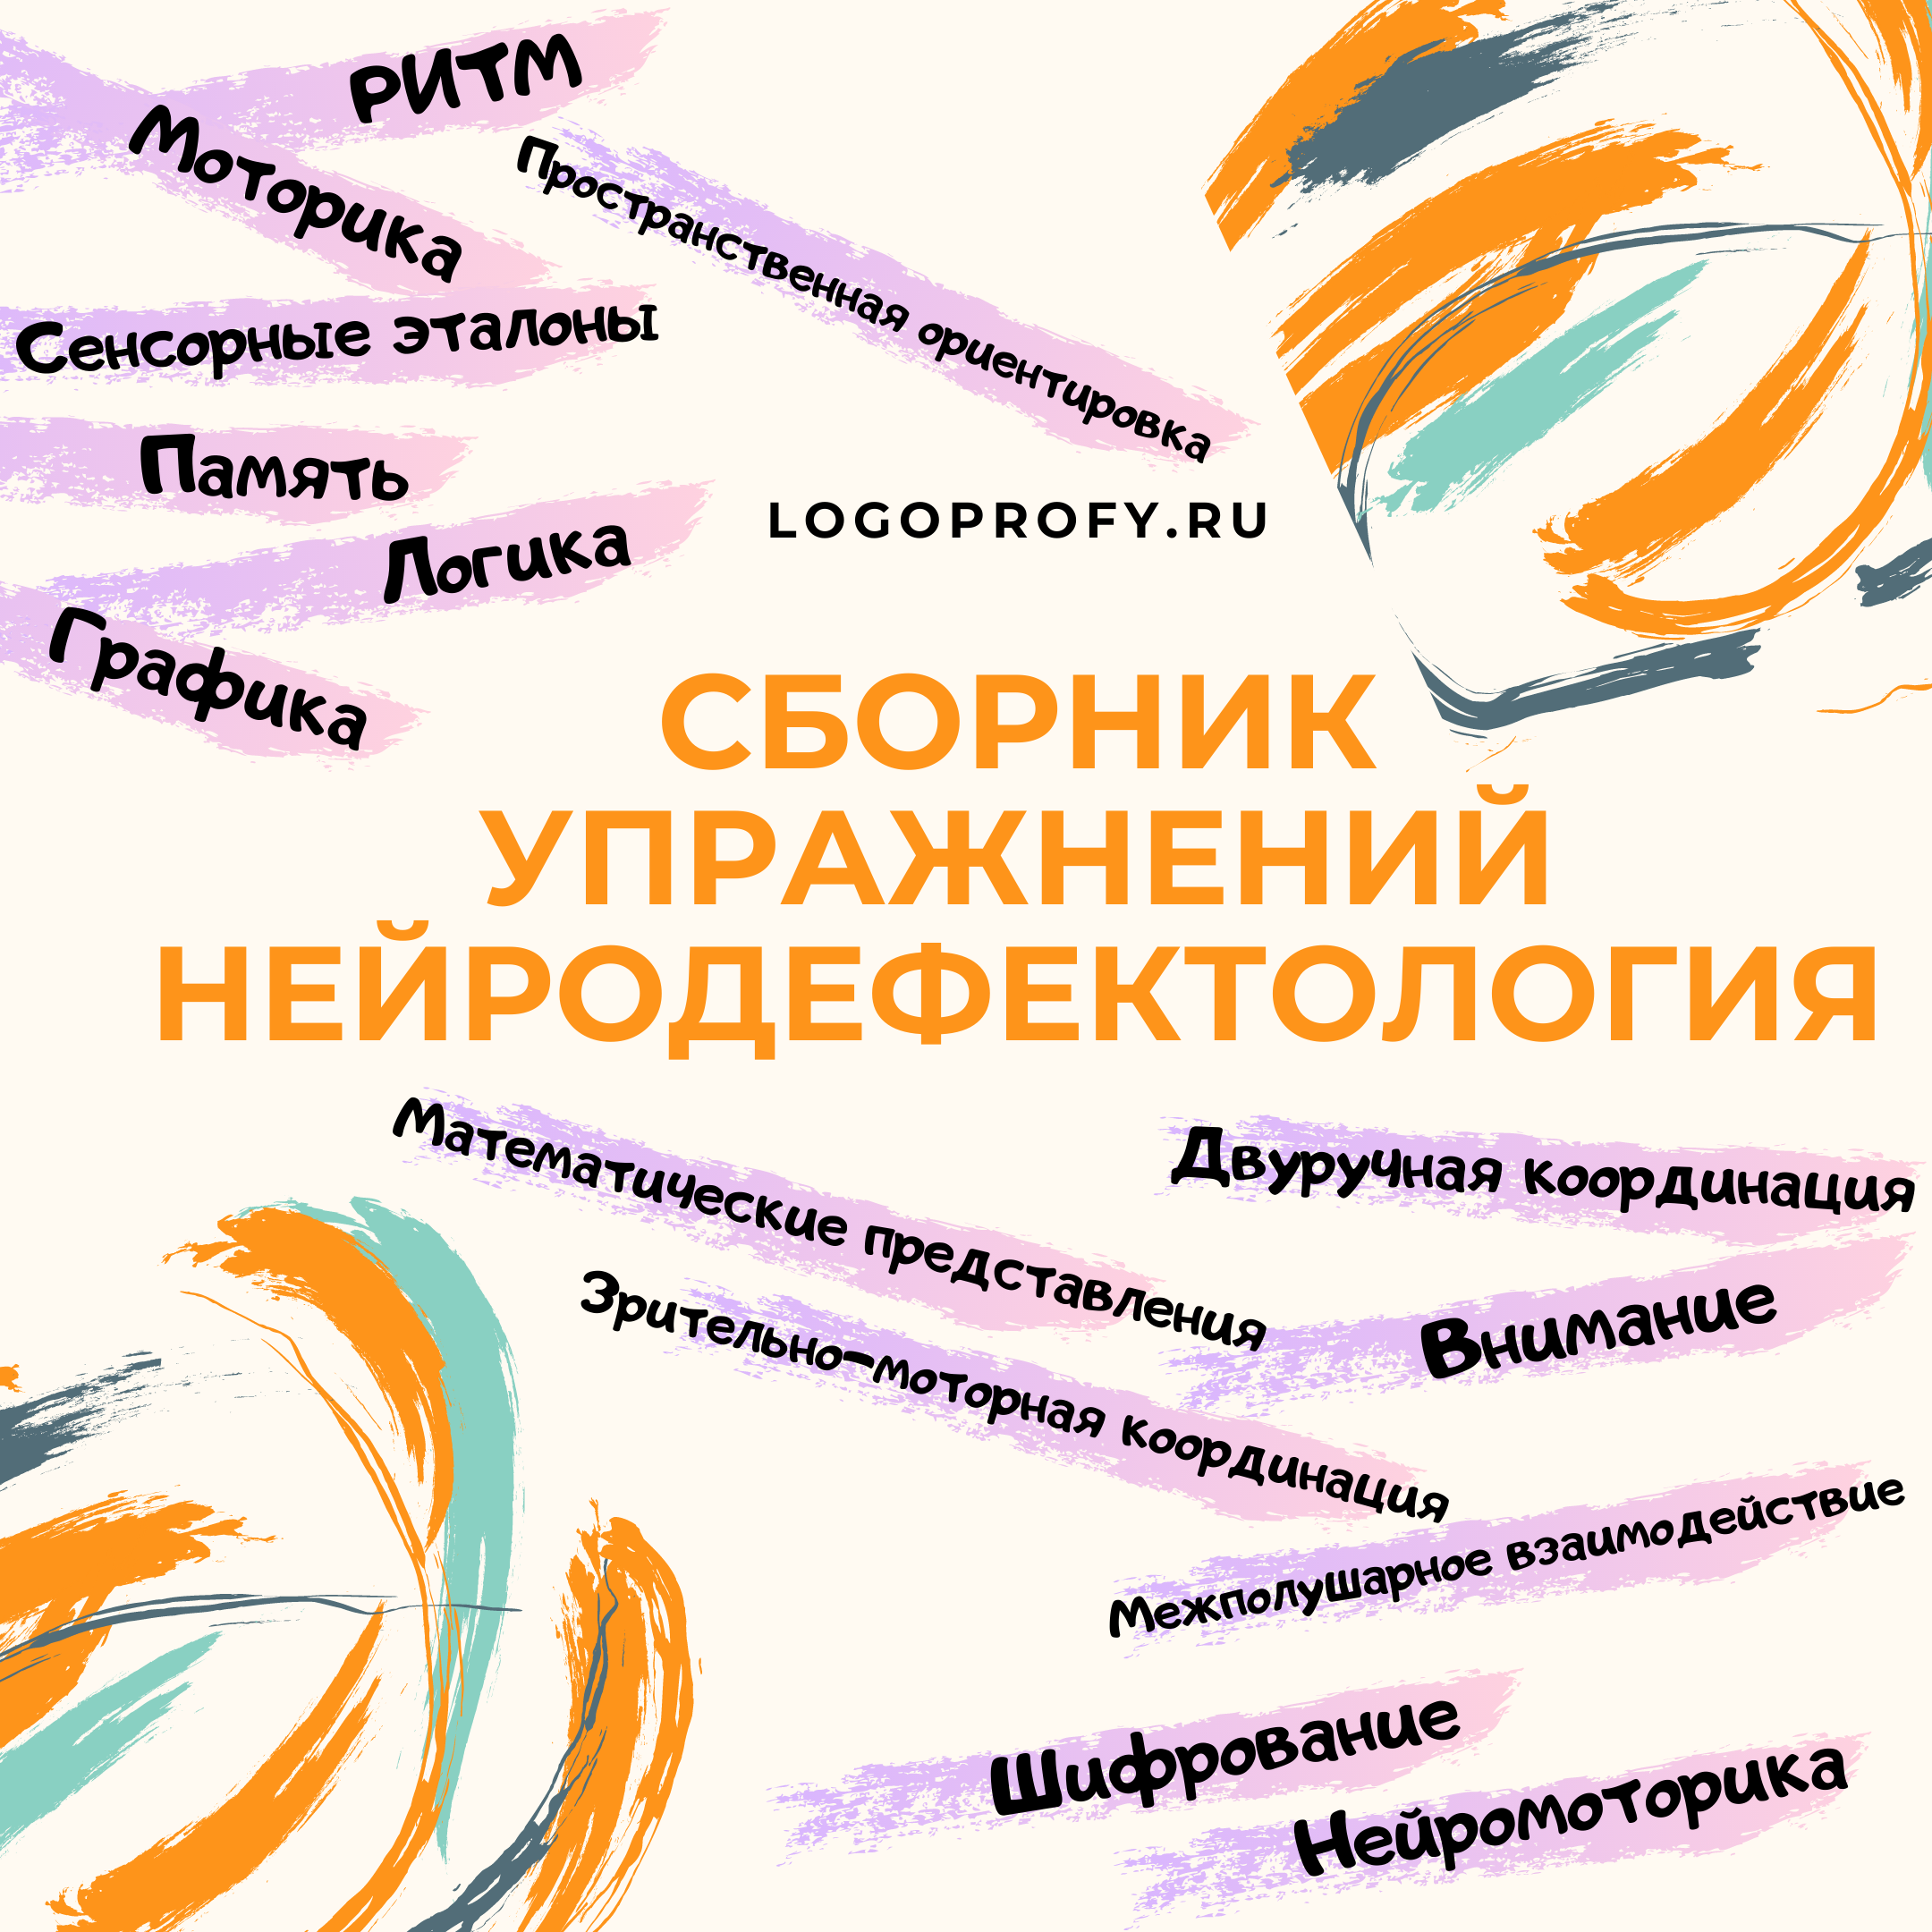 Сборник упражнений Нейродефектология на Logoprofy.ru